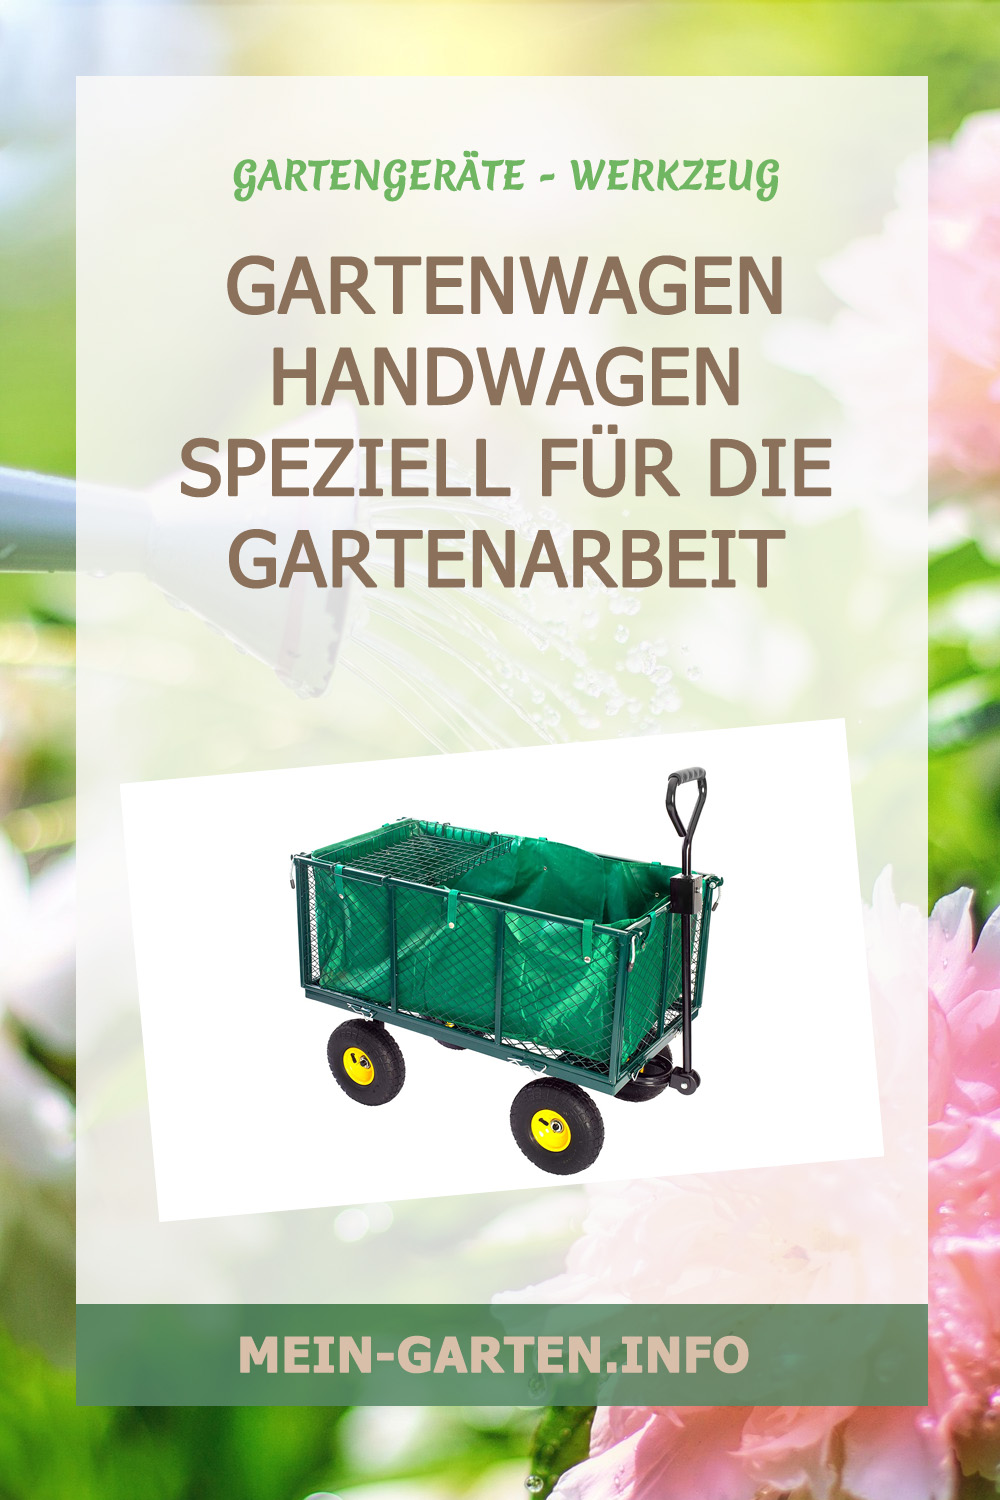 Gartenwagen Handwagen speziell für die Gartenarbeit